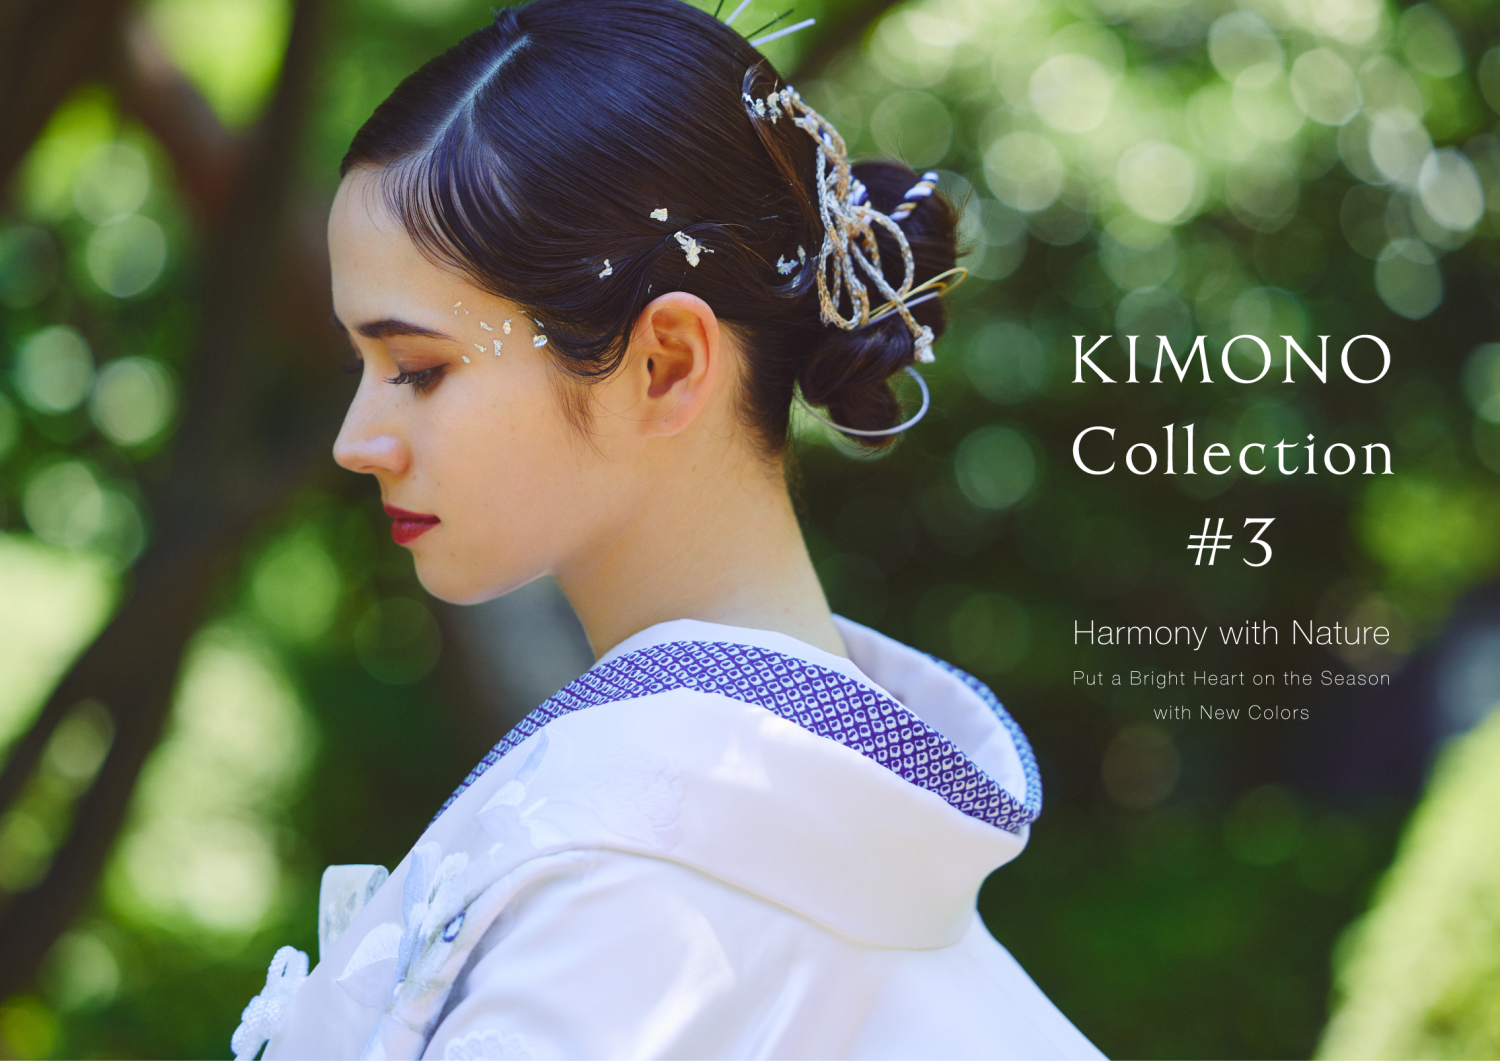 「KIMONO Collection #3」リリースしました。